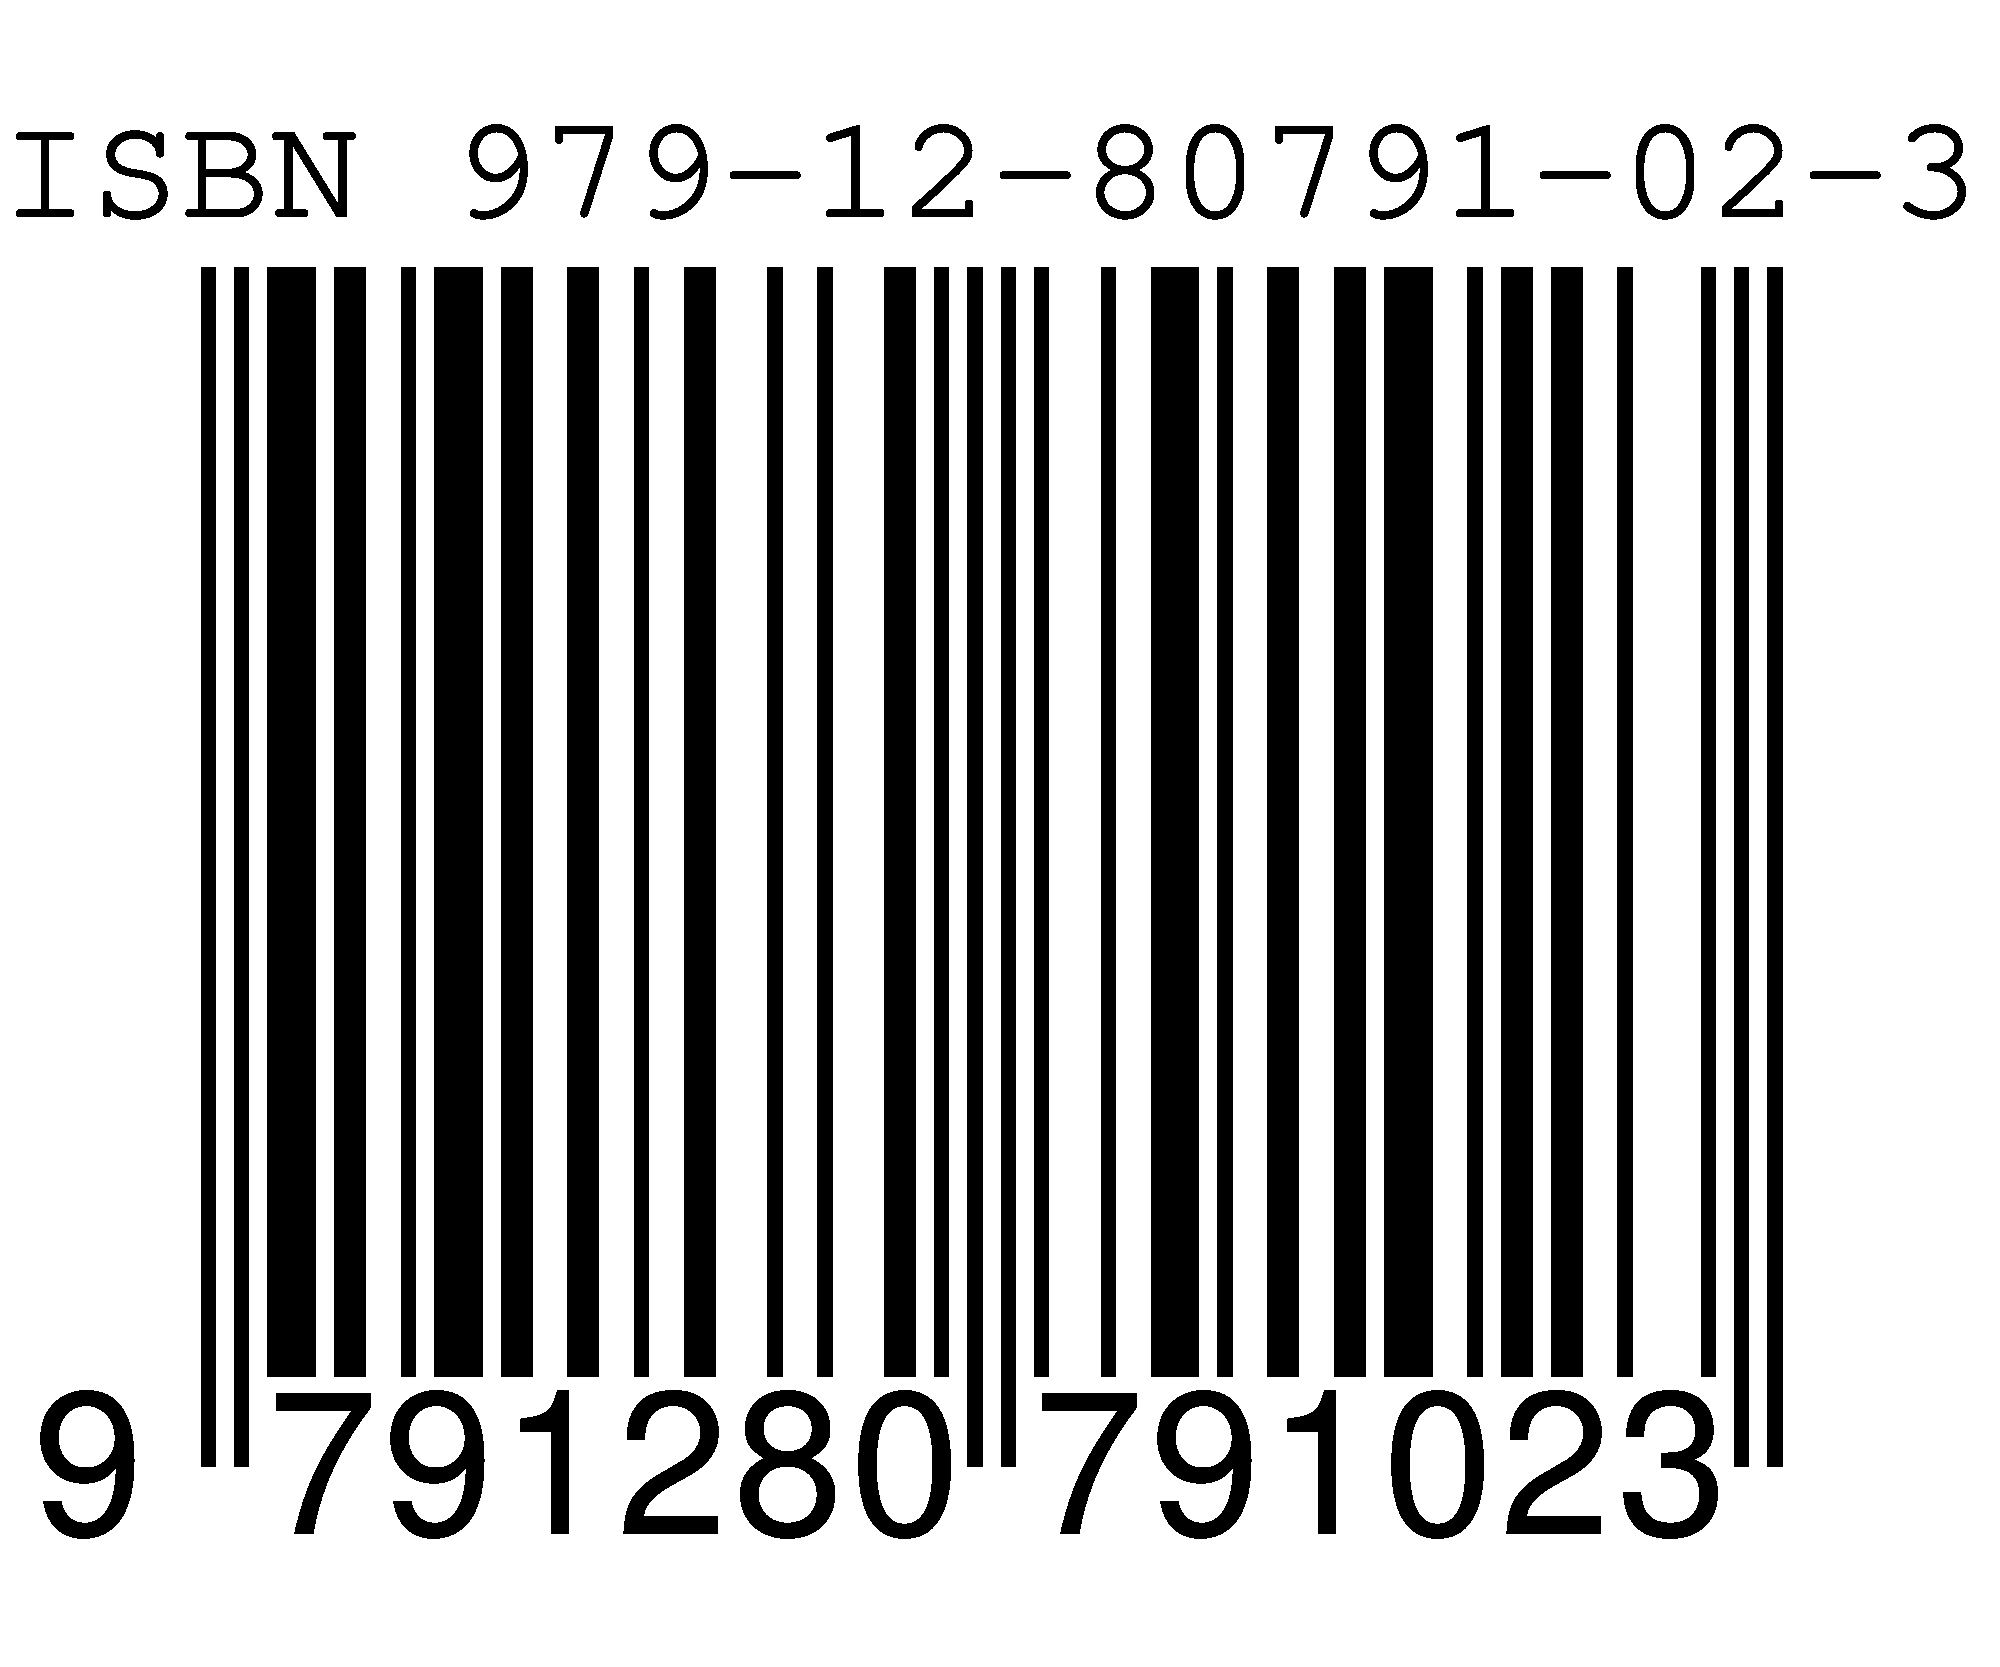 ISBN 979-12-80791-02-3